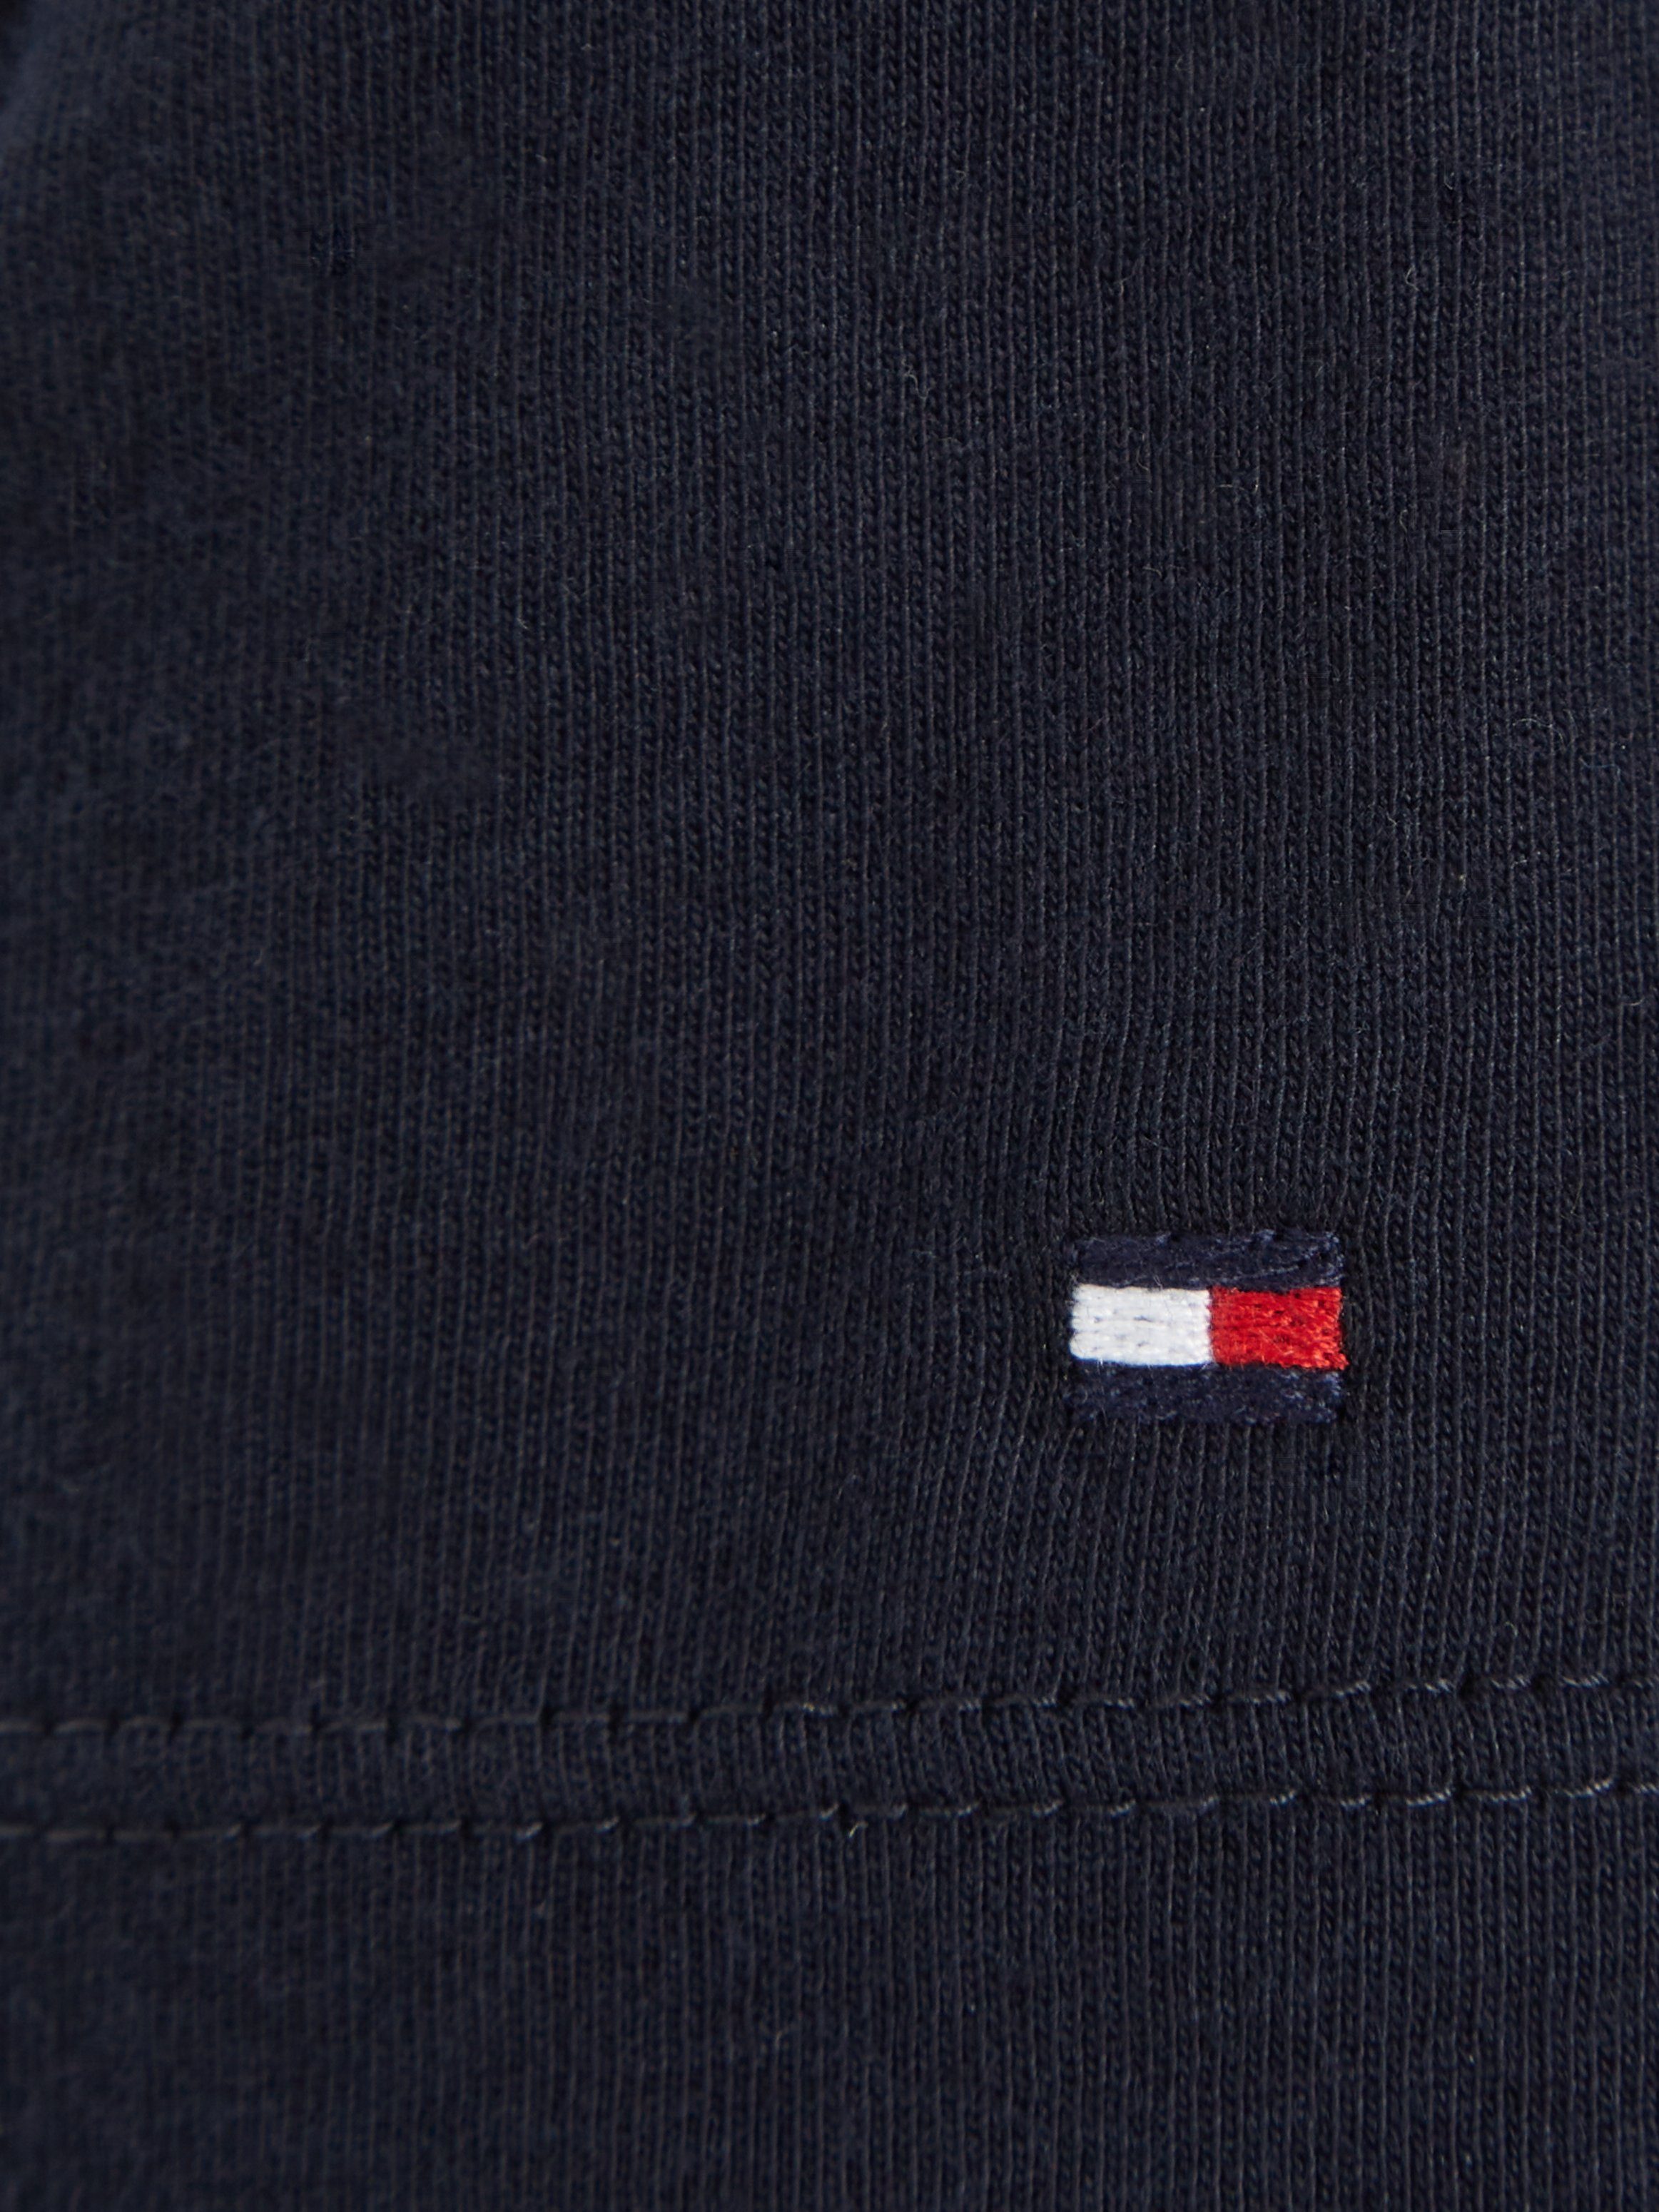 Hilfiger der S/S modischem dunkelblau MONOTYPE Hilfiger-Logoschriftzug T-Shirt Brust Tommy auf TEE mit